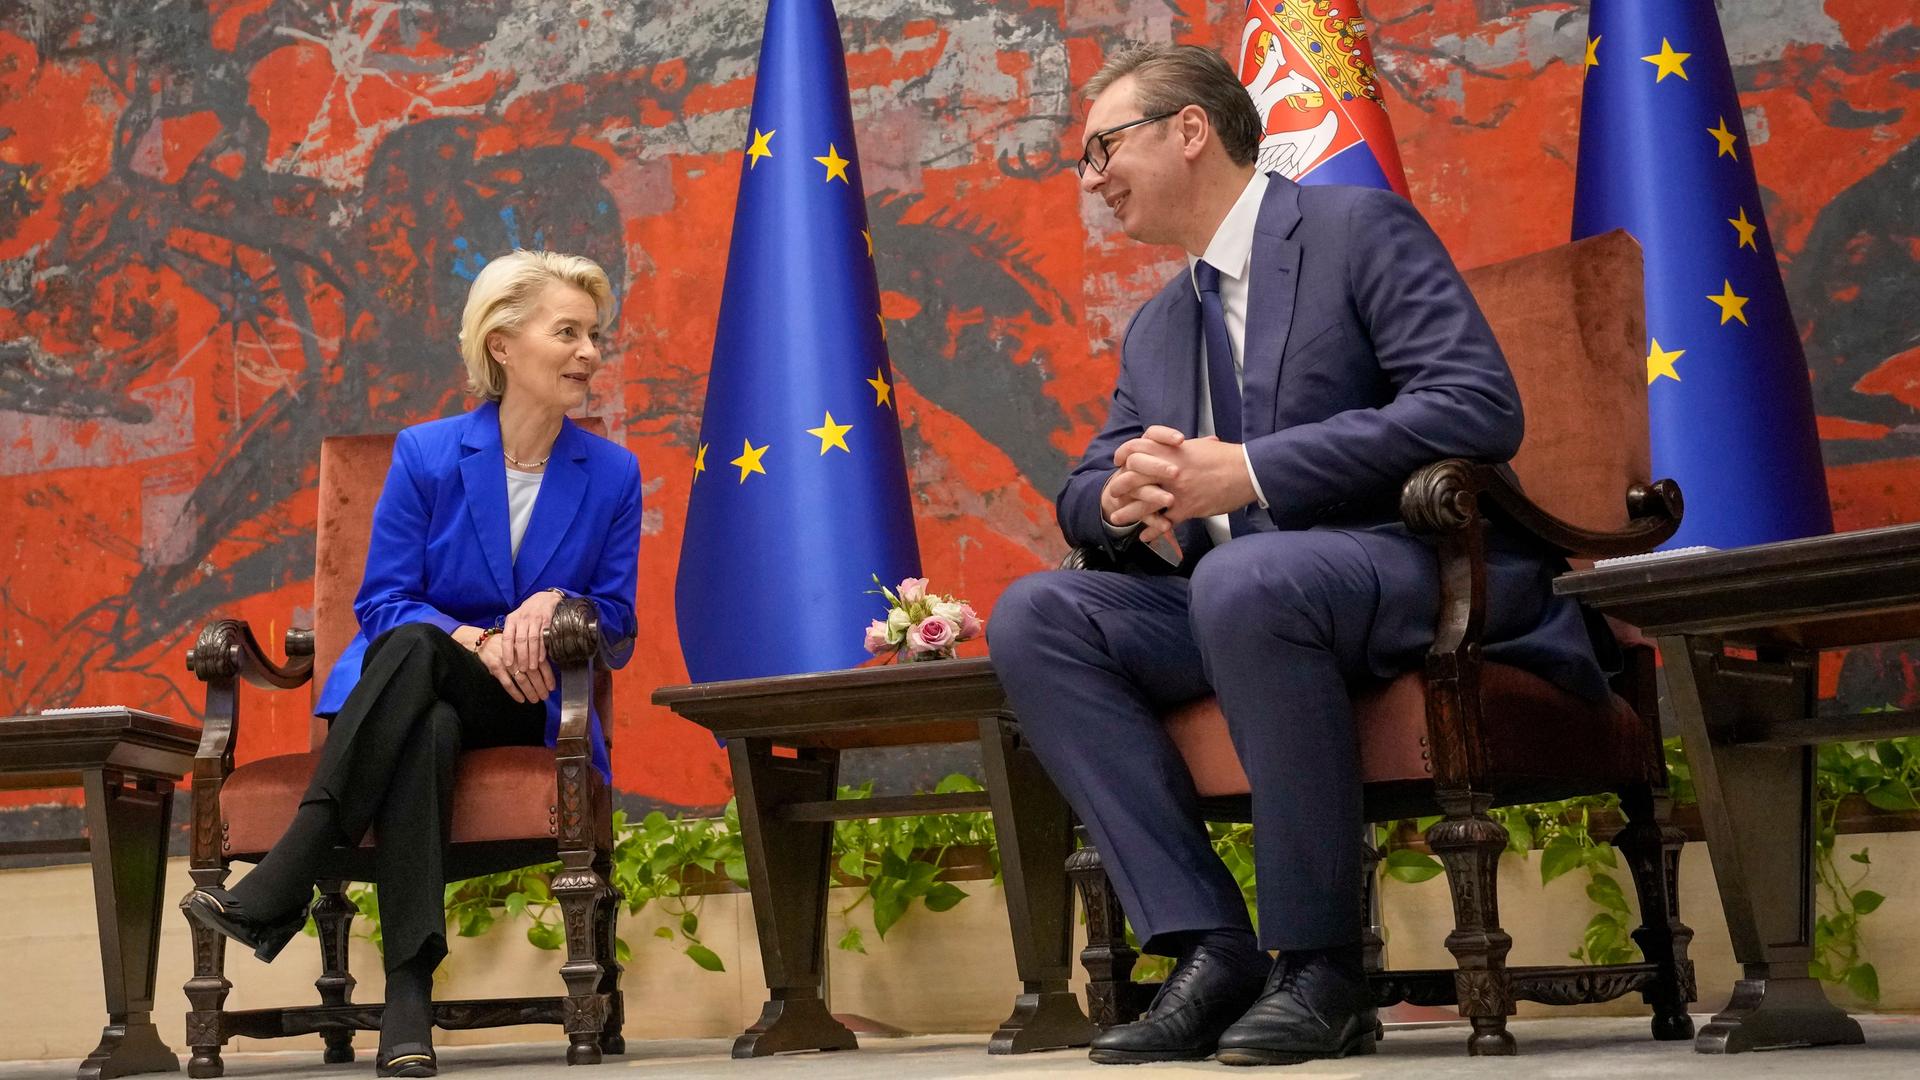 Serbien, Belgrad: Aleksandar Vucic (r), Präsident von Serbien, spricht mit Ursula von der Leyen, Präsidentin der Europäischen Kommission, im Serbien-Palast.